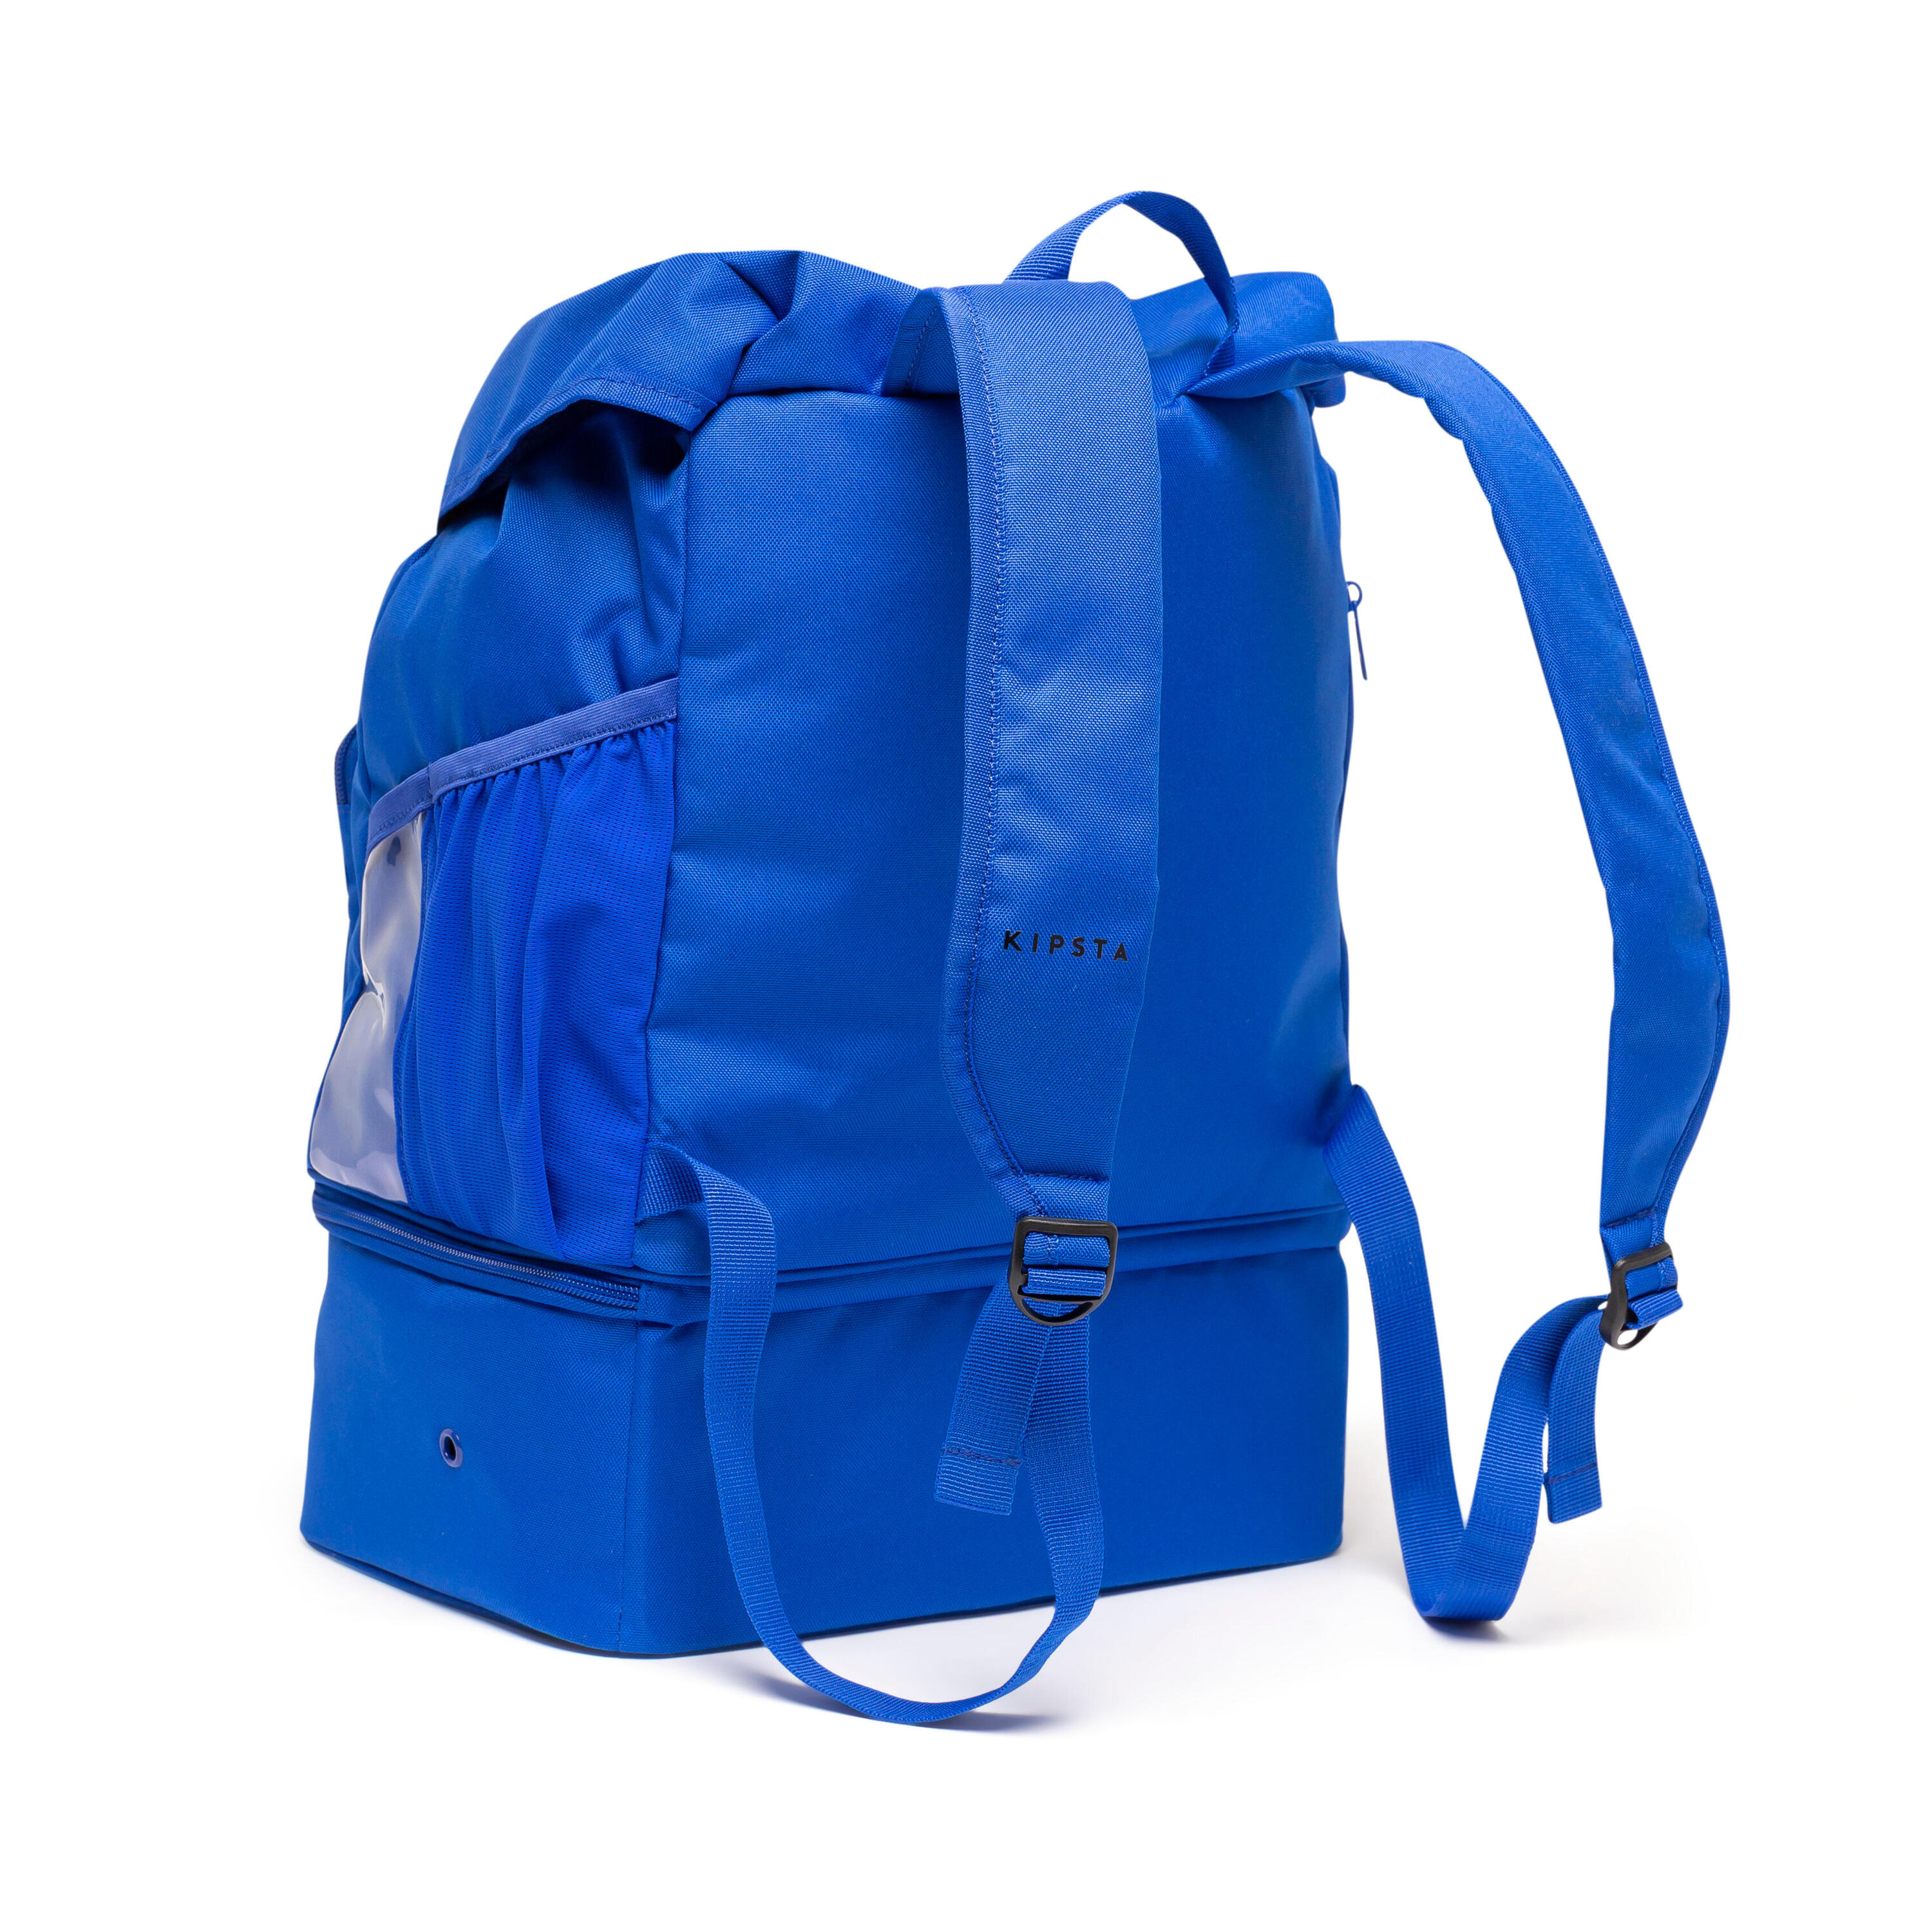 30 L Backpack Hardcase - Royal Blue 6/8